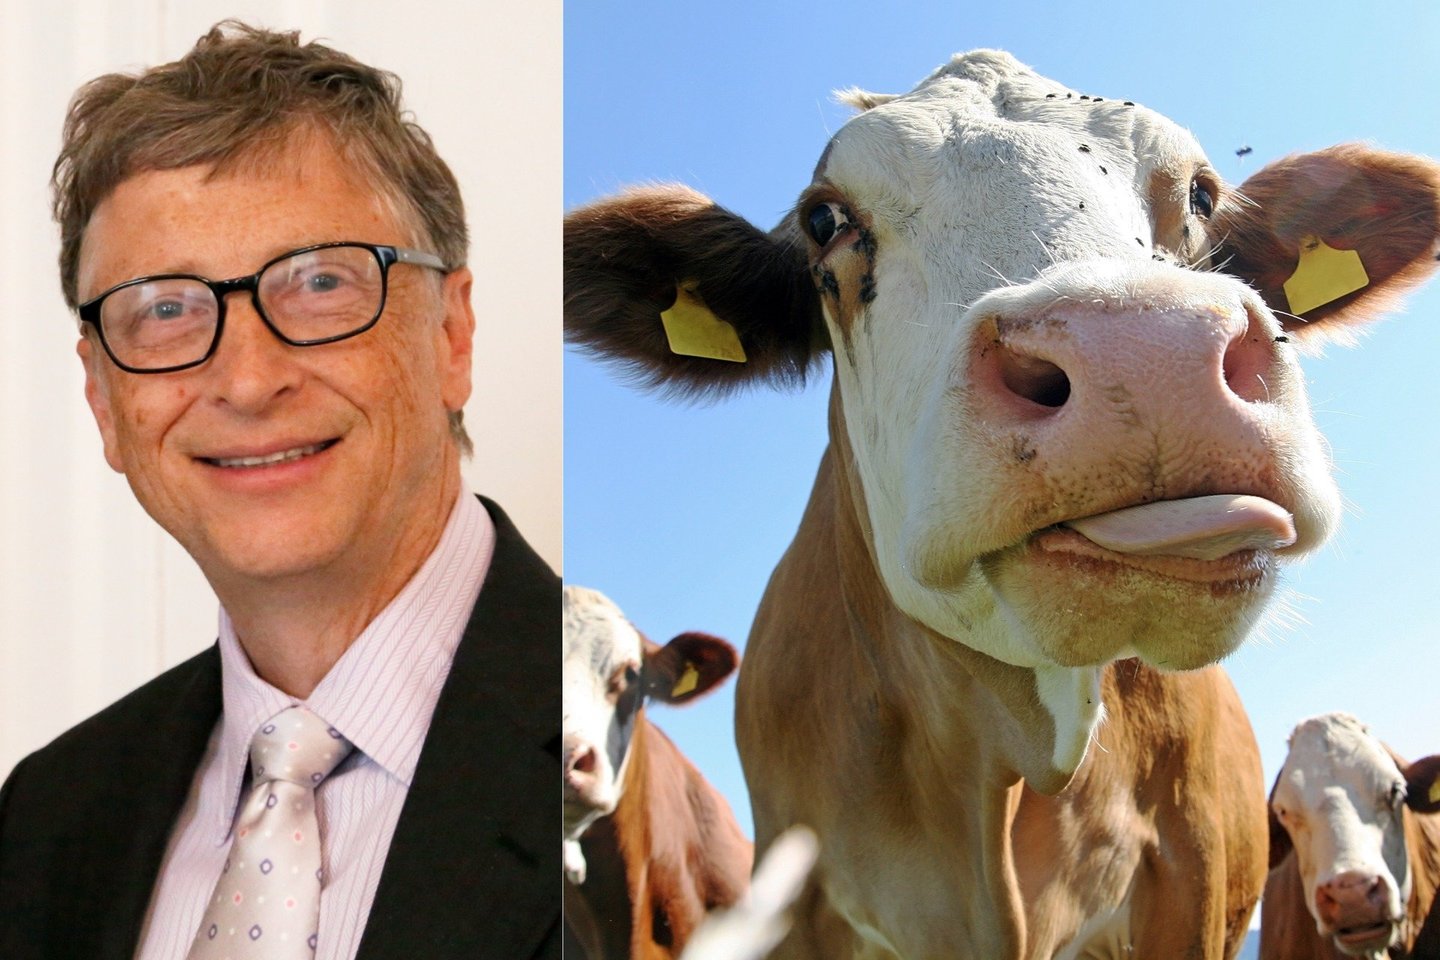  B.Gatesas teigia, kad 80 vargingiausių šalių dar kurį laiką valgys tikrą jautieną. Svarbu pabrėžti – kurį laiką. Ateityje visi pereisime prie netikros mėsos.<br> Wikimedia commons / 123rf nuotr.